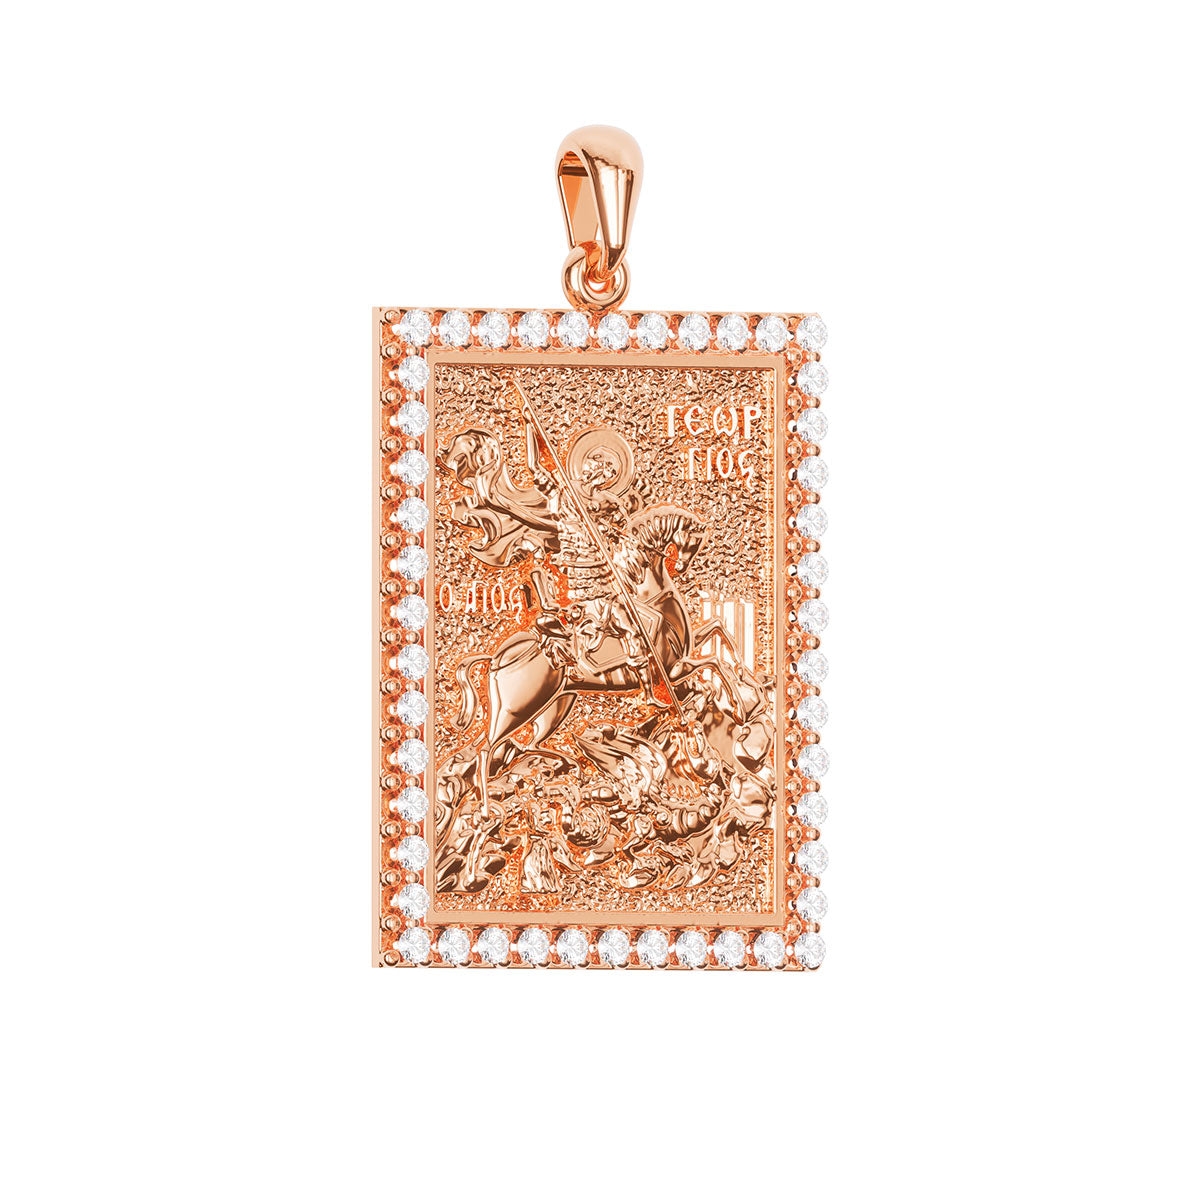 Saint George (Georgios) And the Dragon Sculpted Pavé Tag Medal